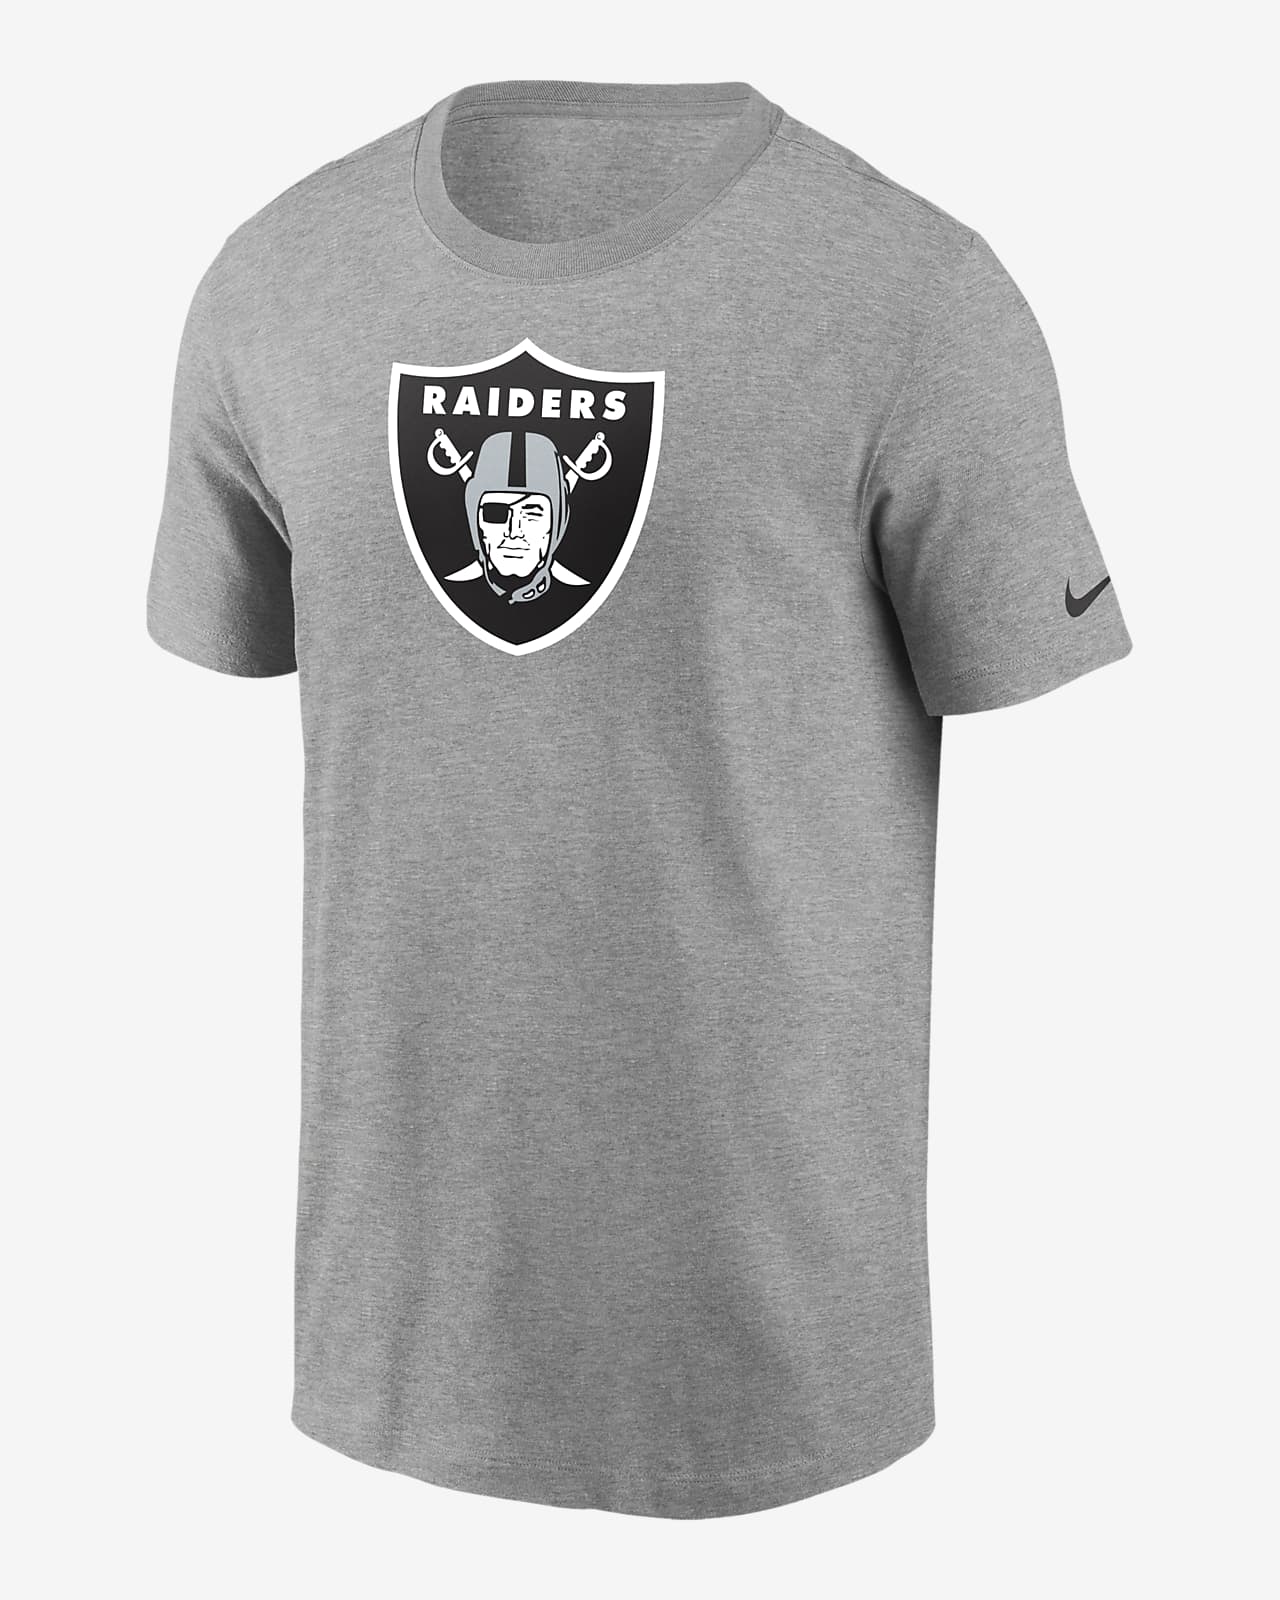 Nike Logo Essential (NFL Las Vegas Raiders) Men's T-Shirt